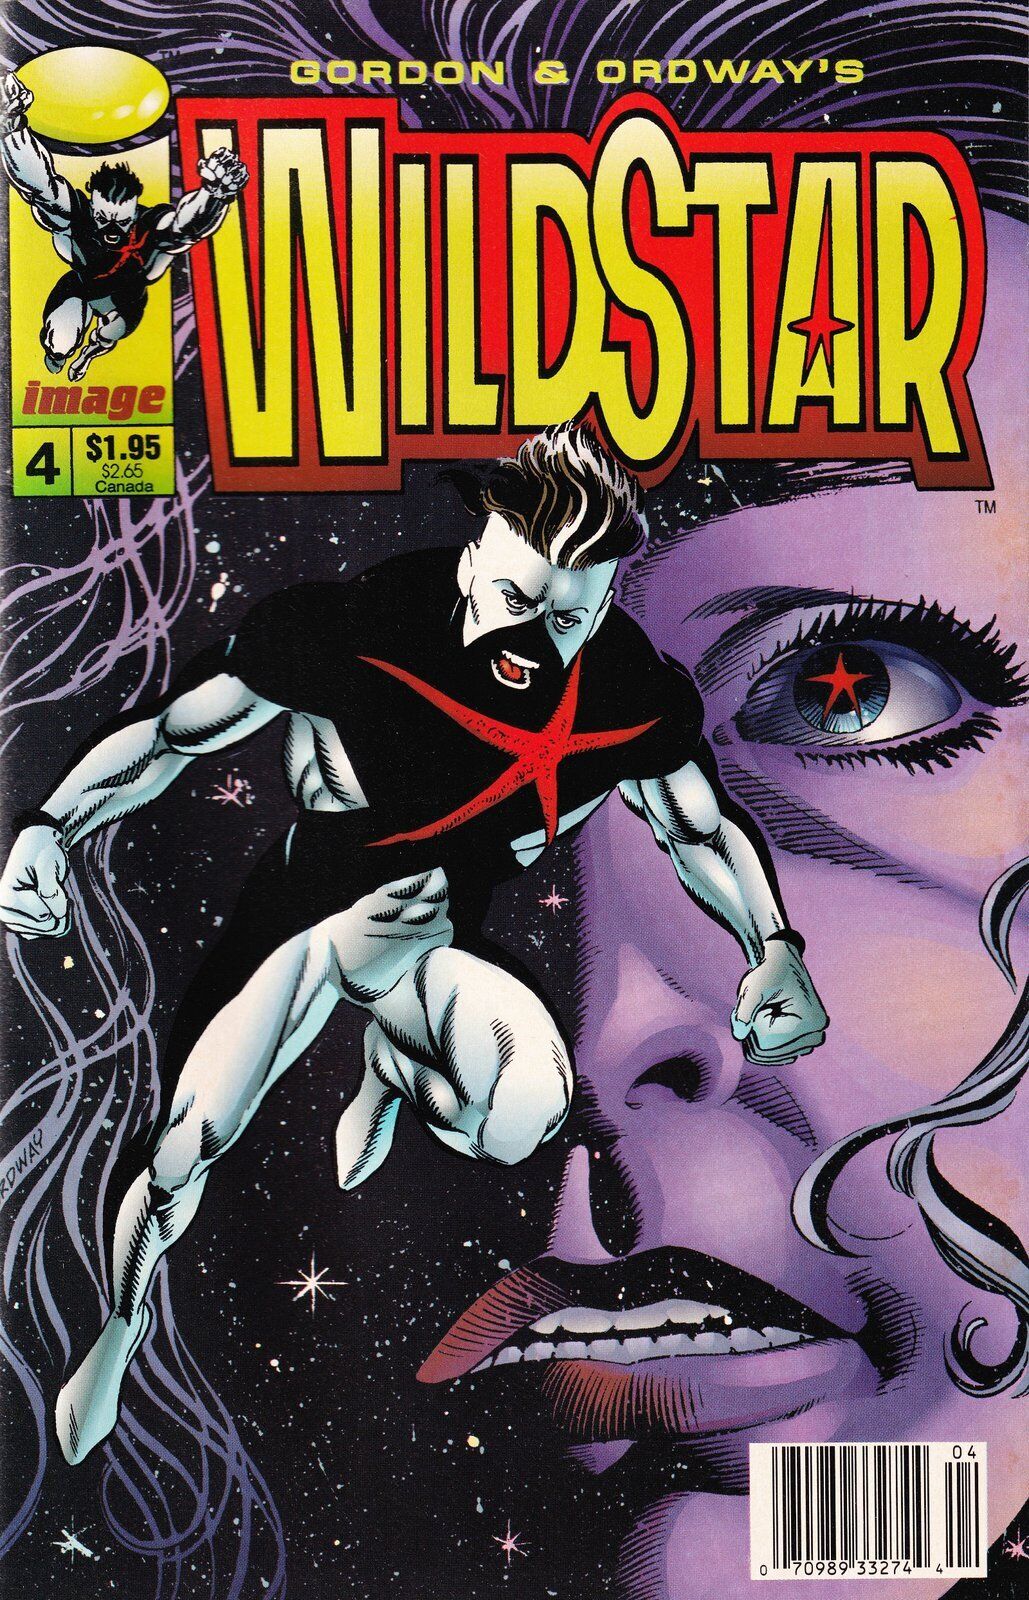 Wildstar: Sky Zero #4 Newsstand Cover Image Comics